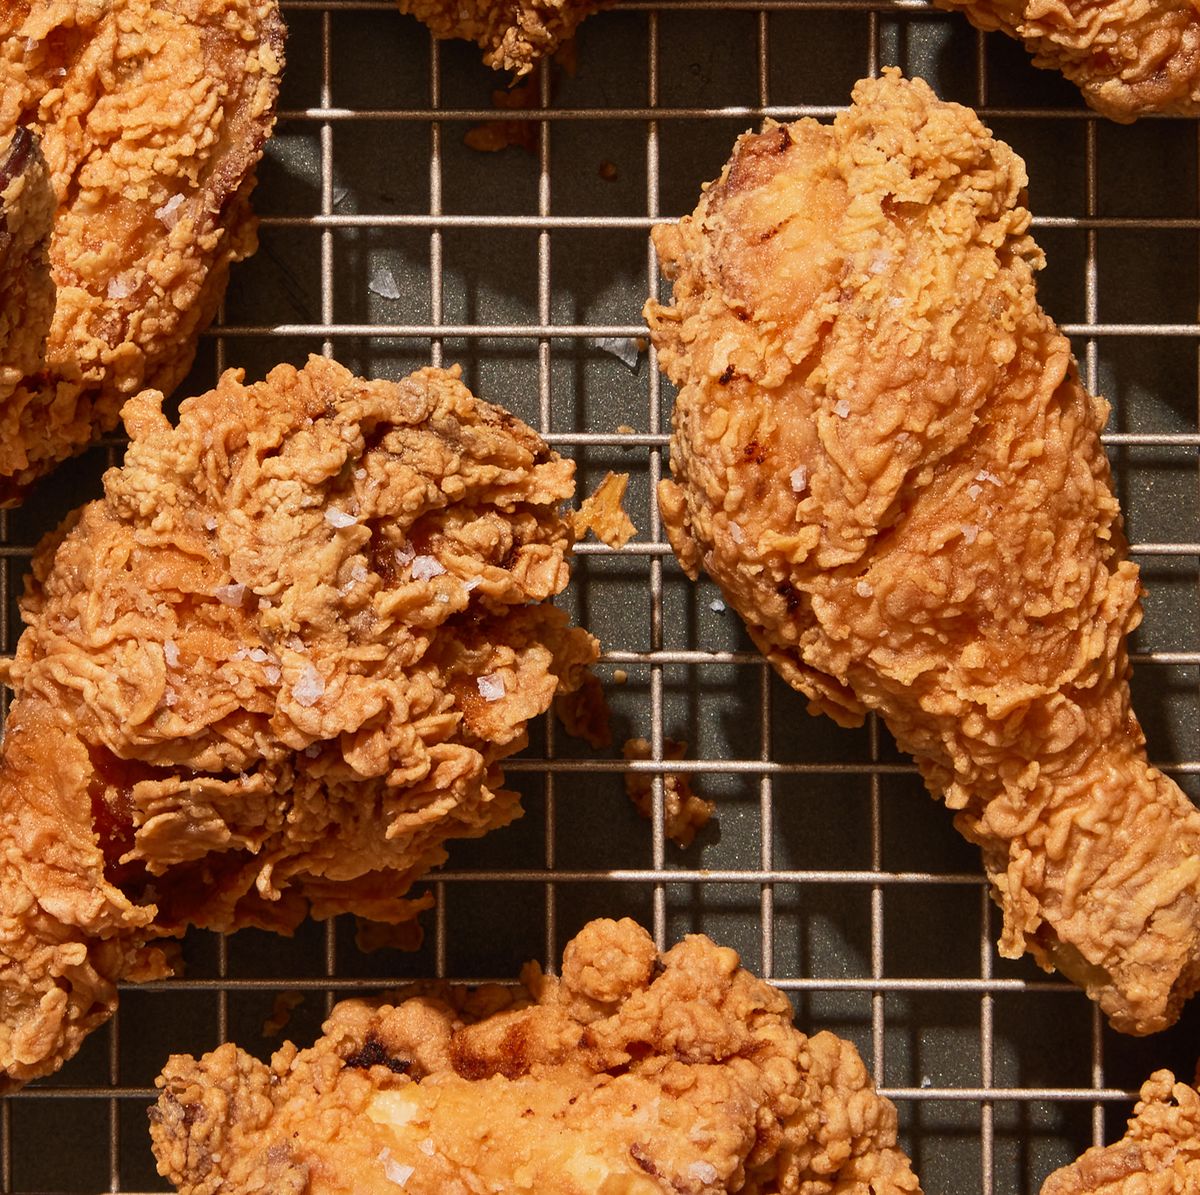 Fried Chicken Recipe